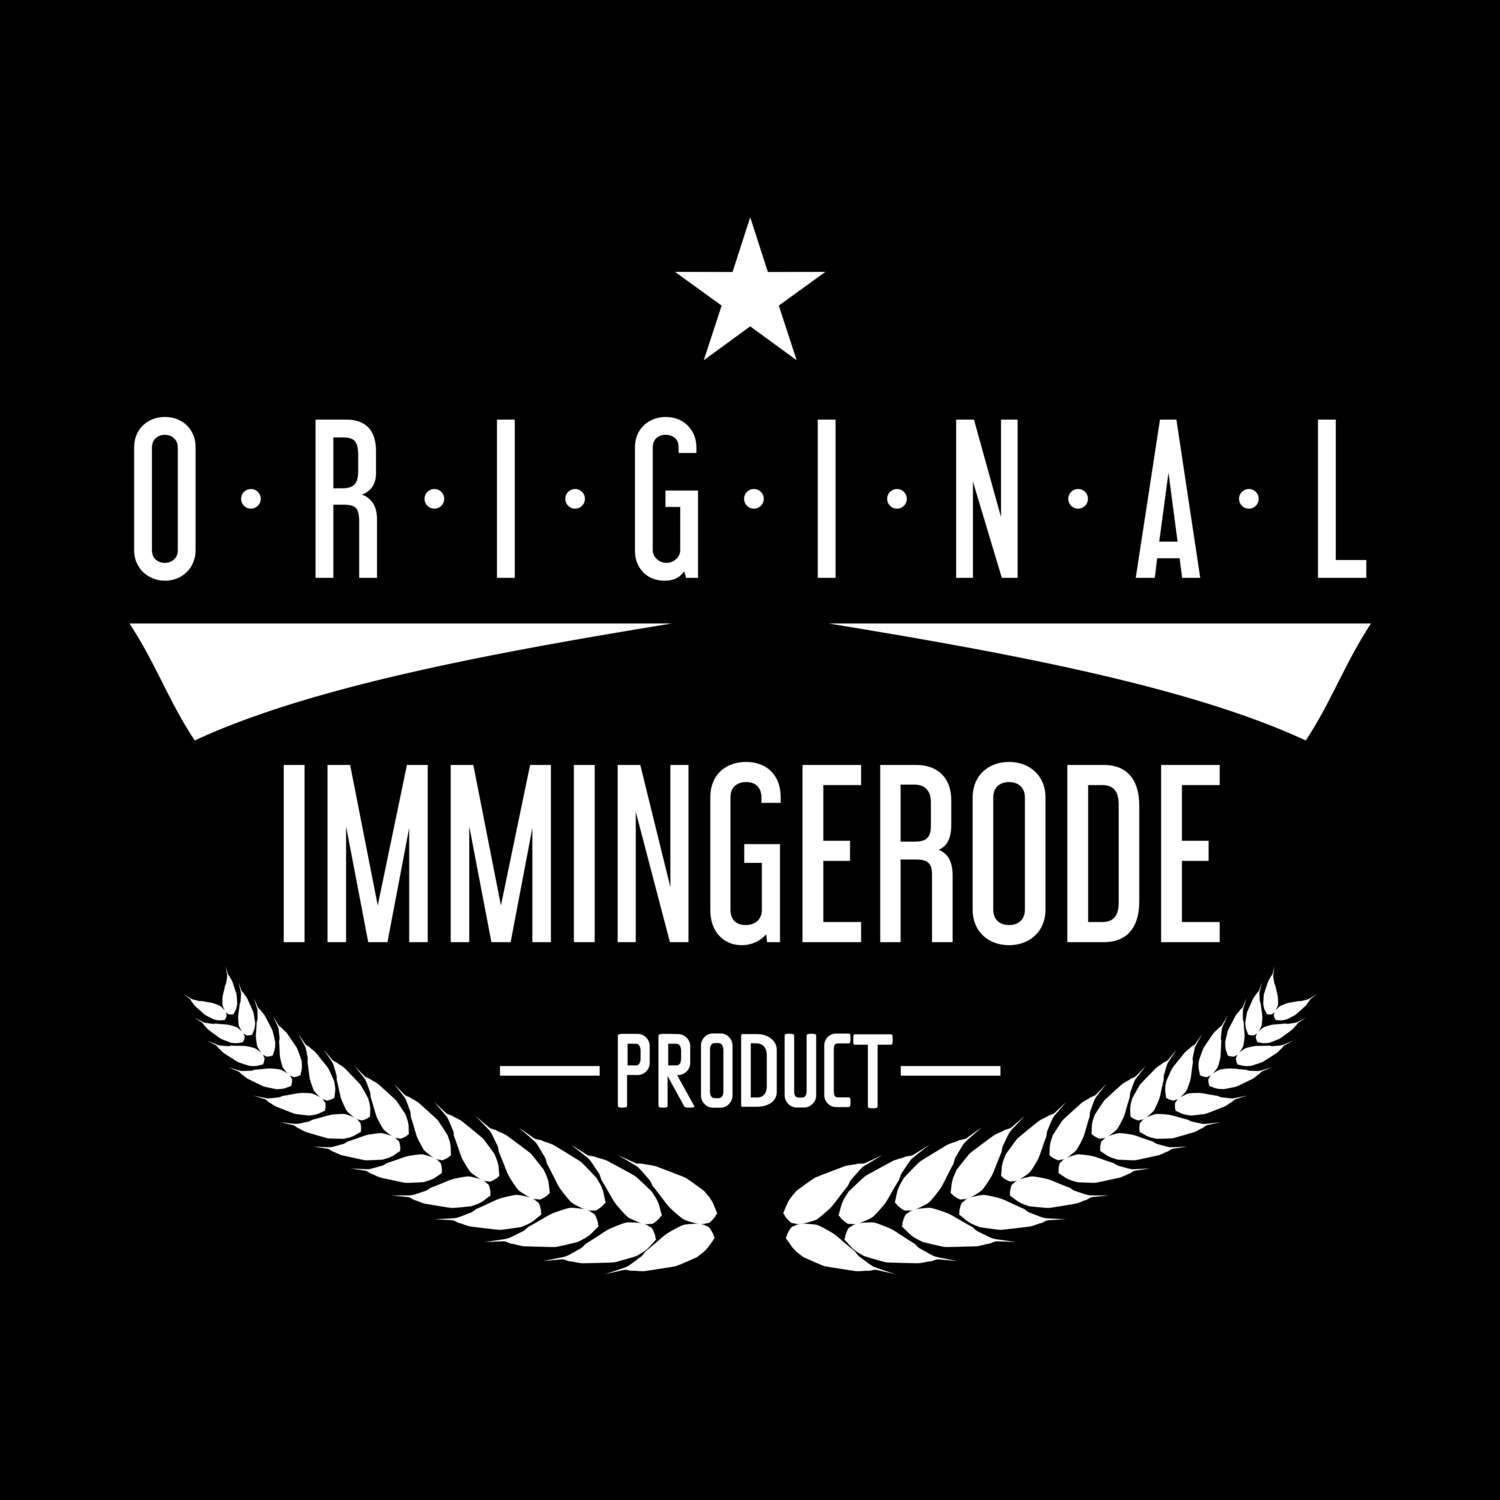 Immingerode T-Shirt »Original Product«